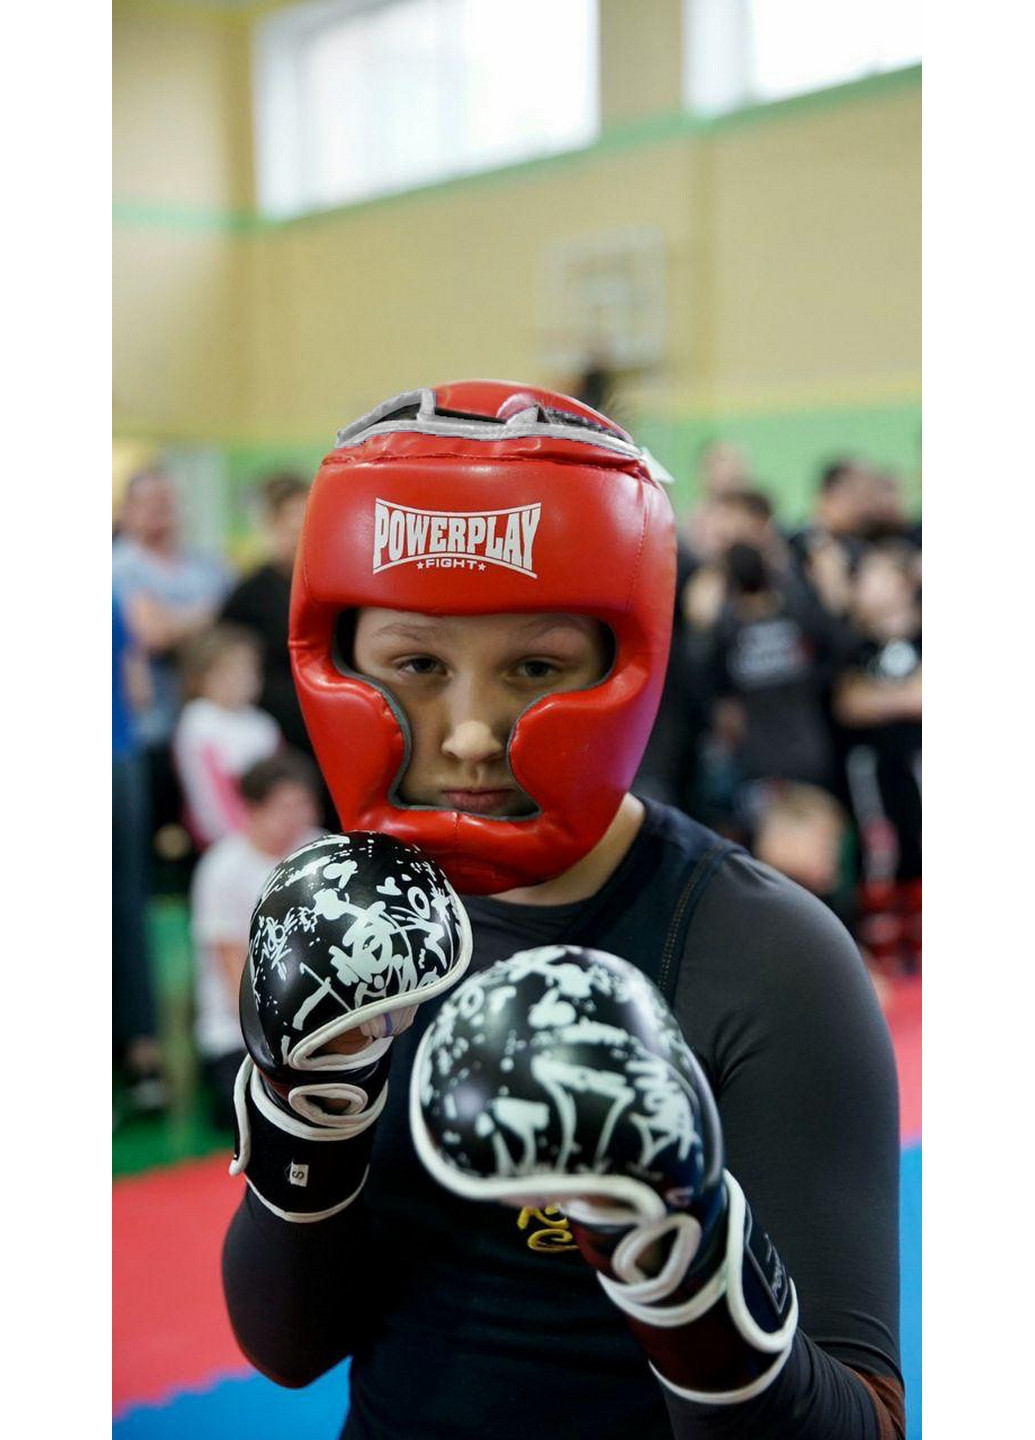 Боксерский шлем тренировочный M PowerPlay (260499528)